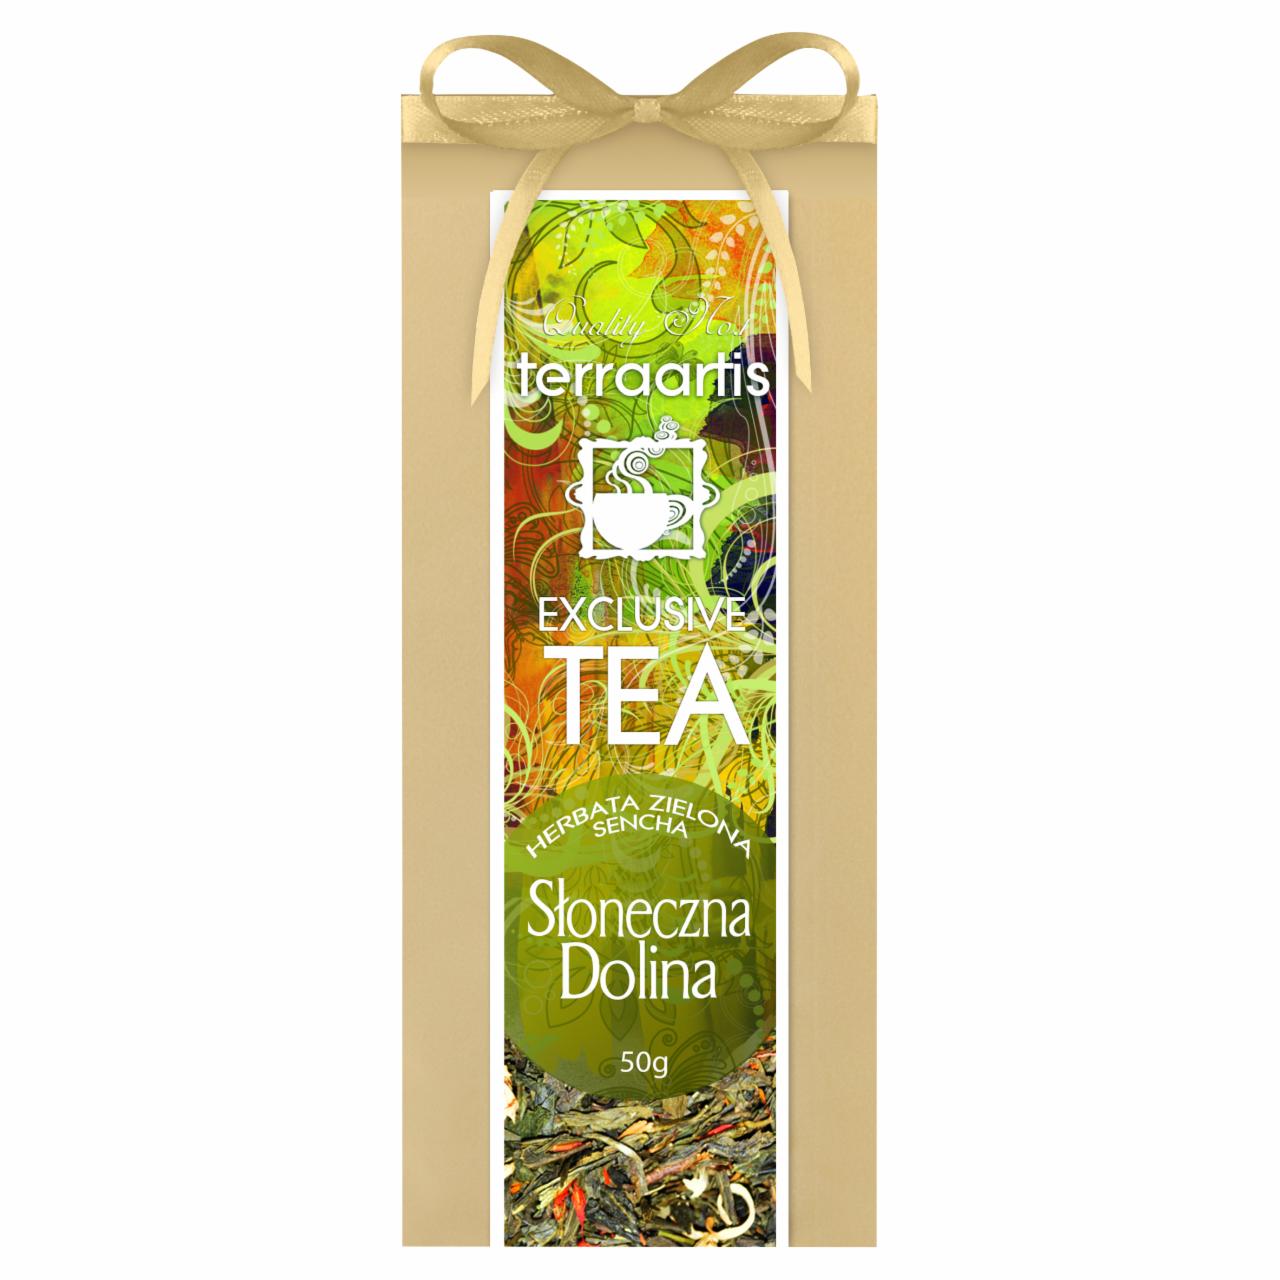 Zdjęcia - Terraartis Exclusive Tea Herbata zielona Sencha słoneczna dolina 50 g